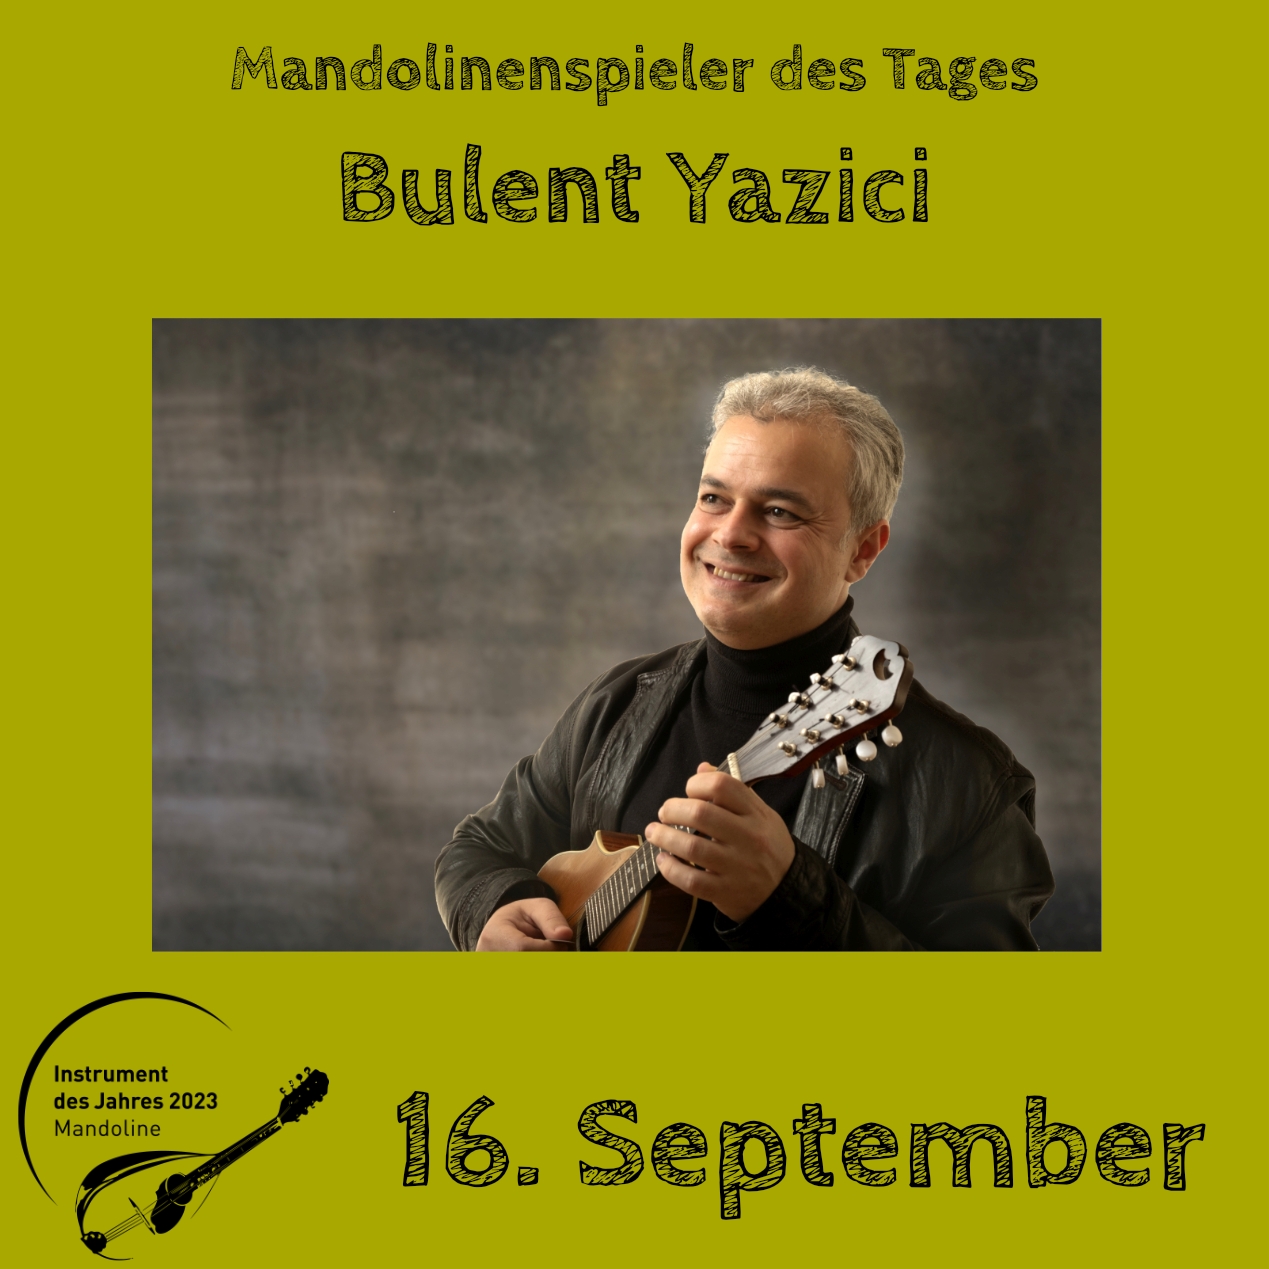 16. September - Bulent Yazici Mandoline Instrument des Jahres 2023 Mandolinenspieler Mandolinenspielerin des Tages